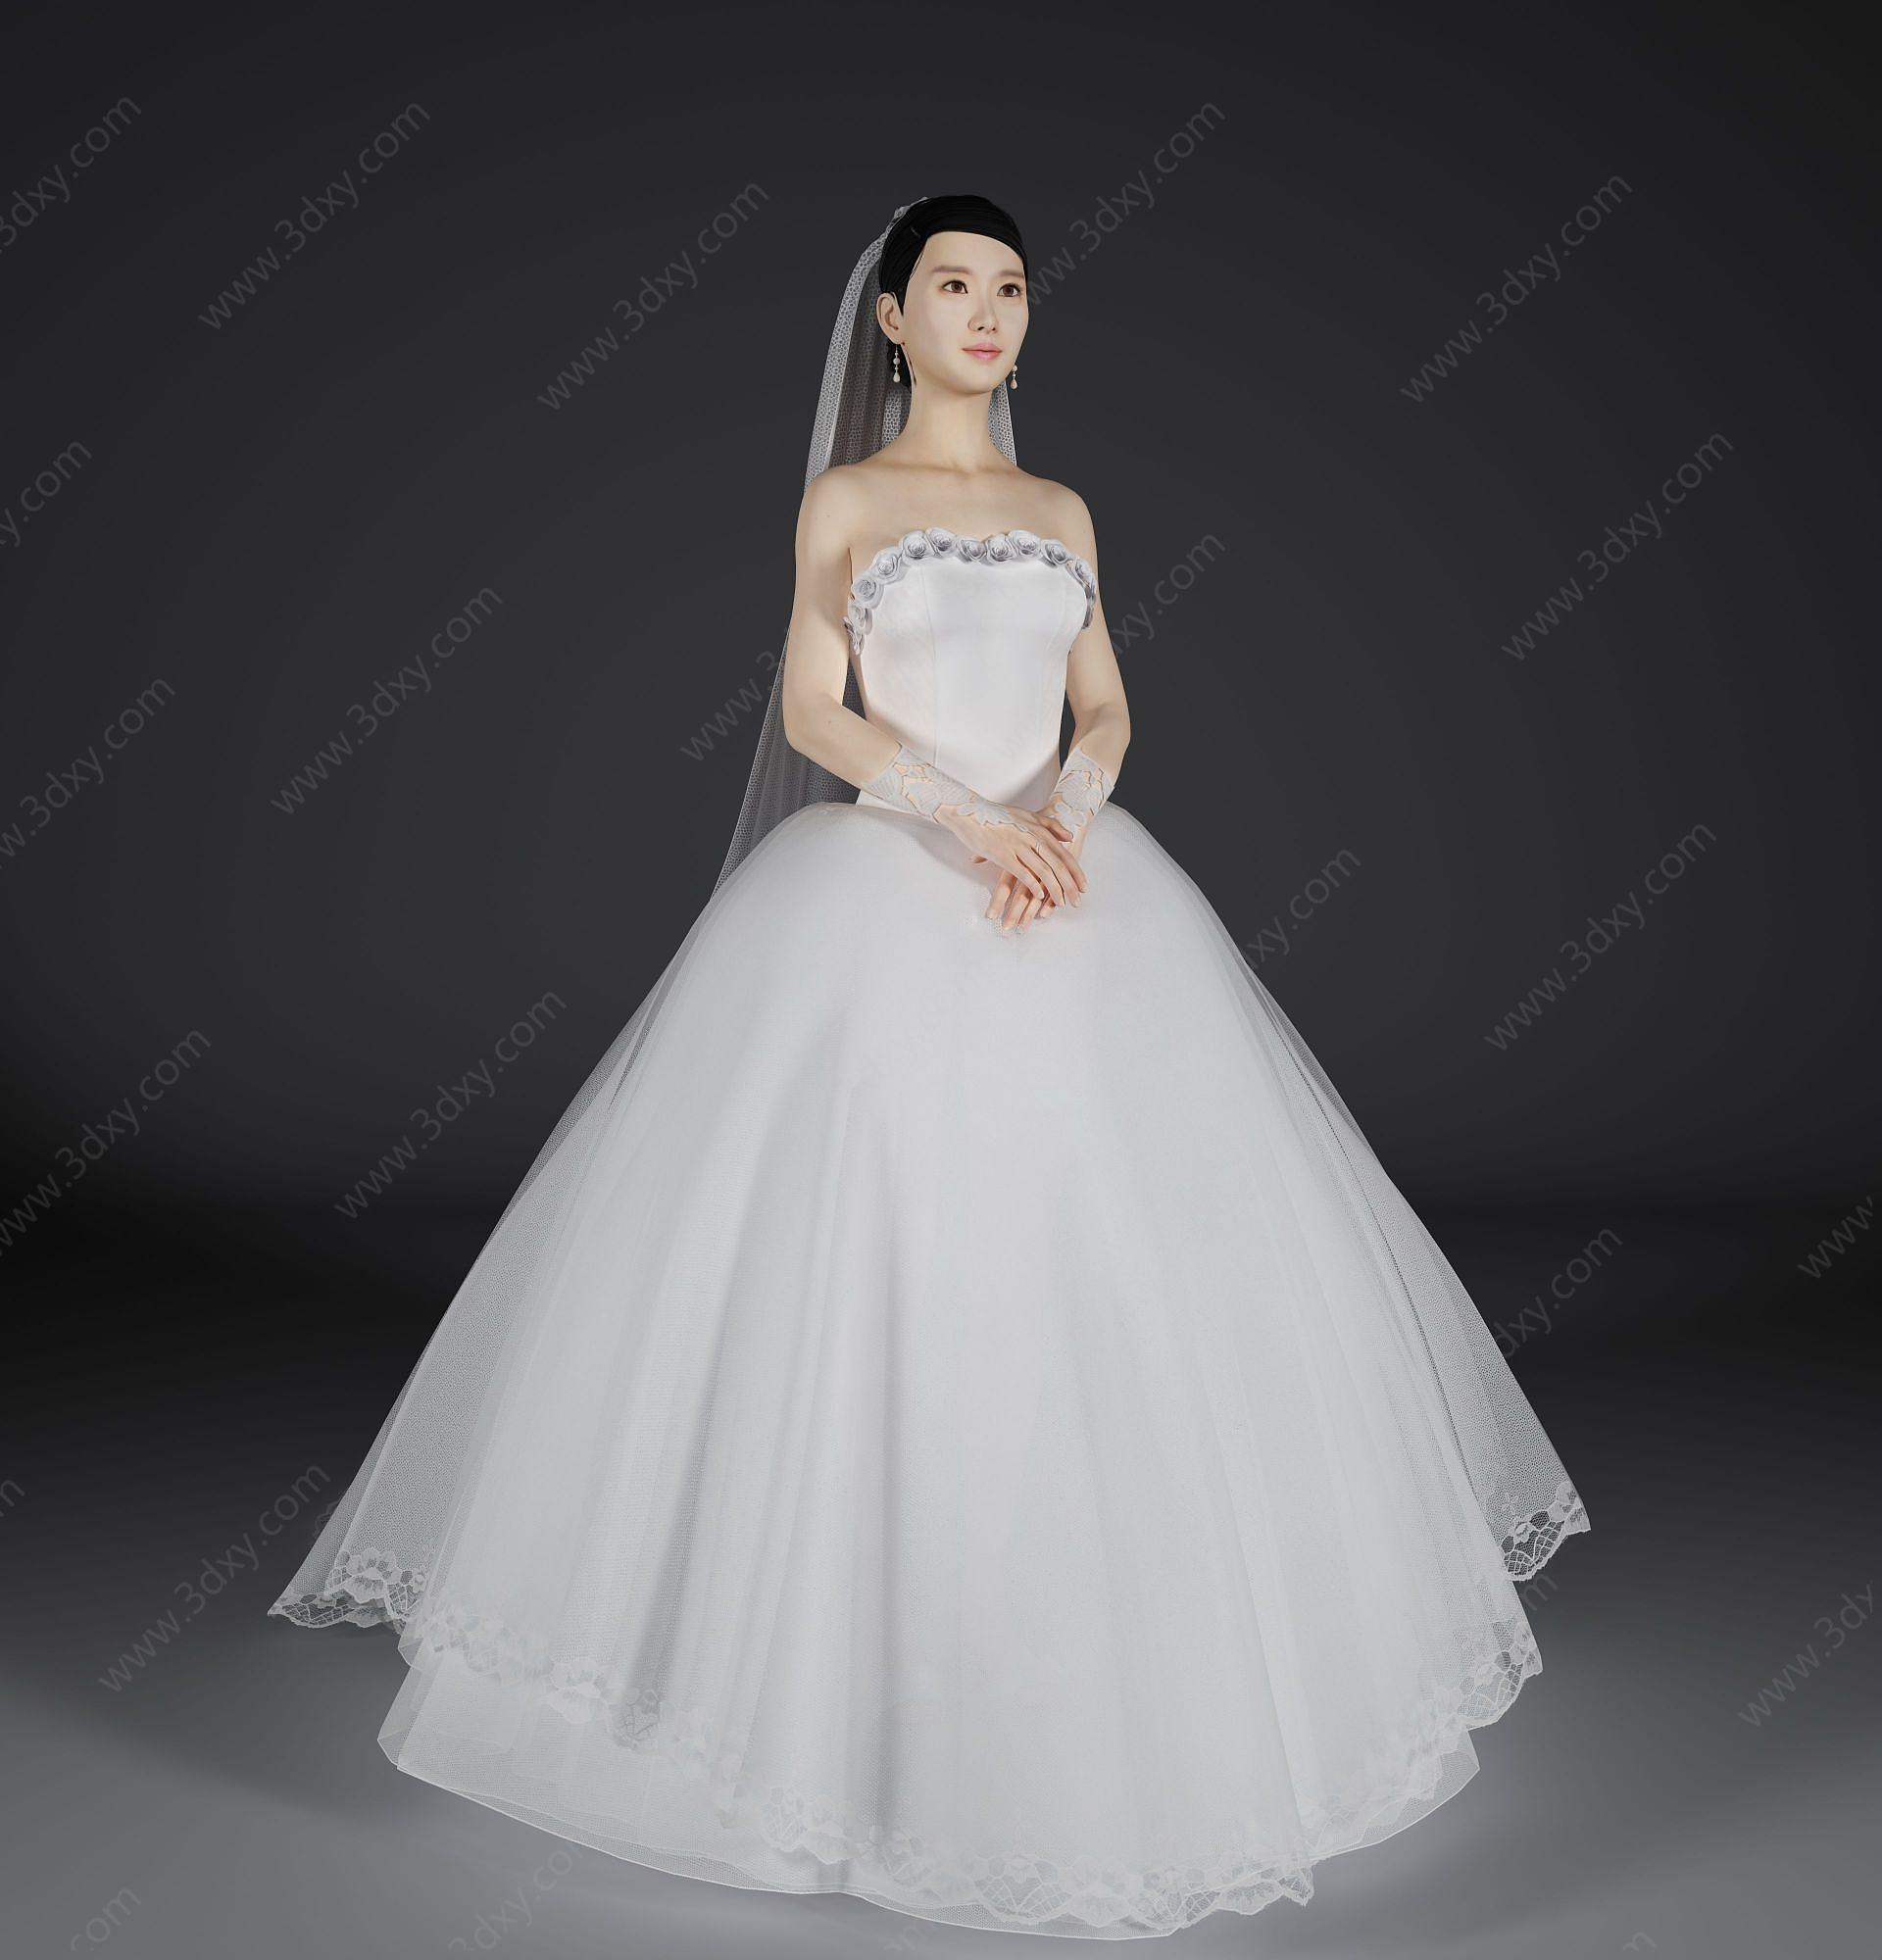 现代风格新娘美女人物3D模型